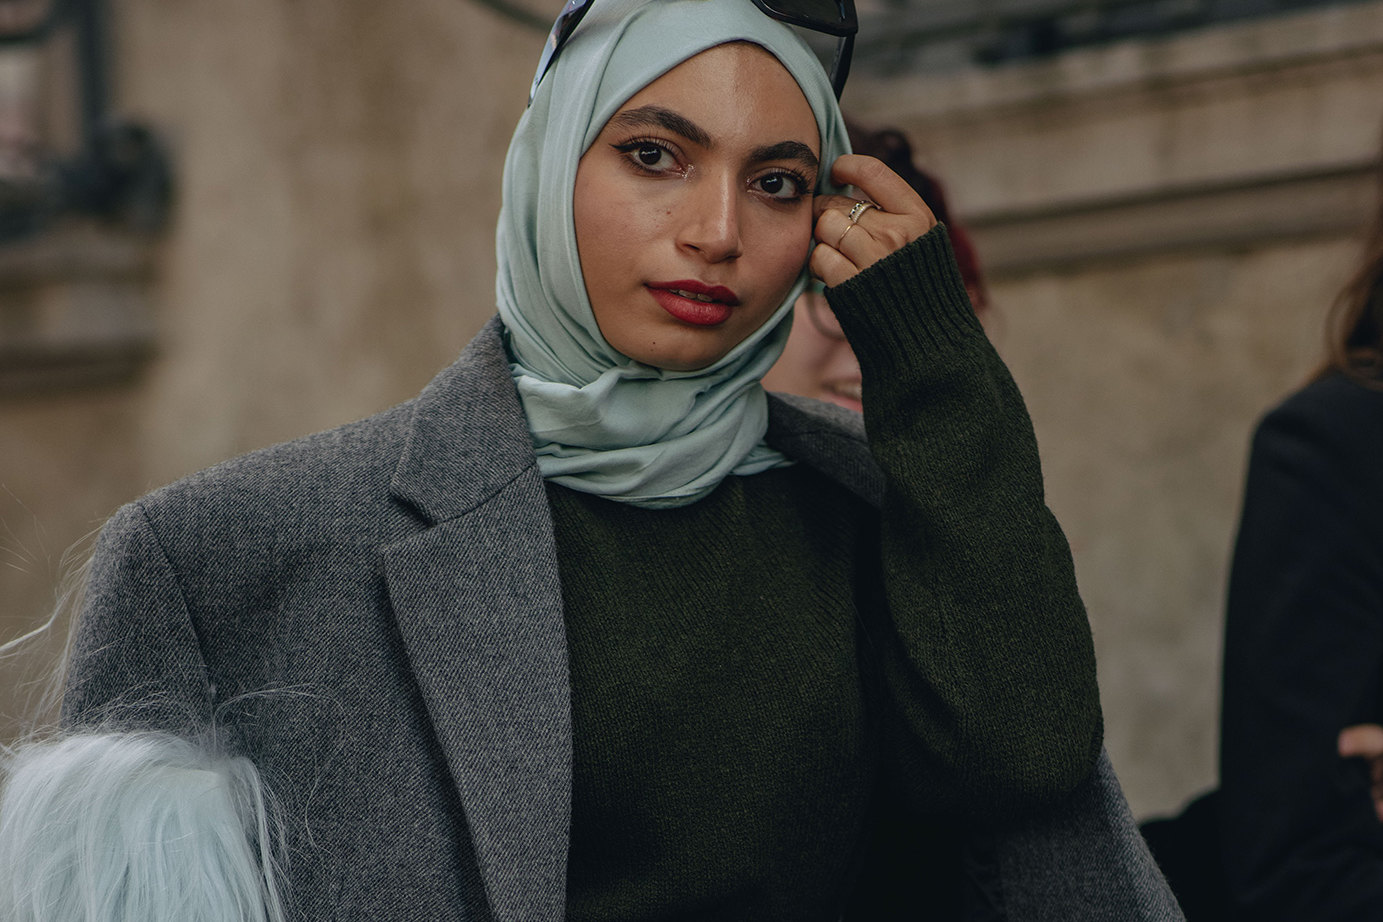 Абая – исламская одежда или просто мода? | натяжныепотолкибрянск.рф